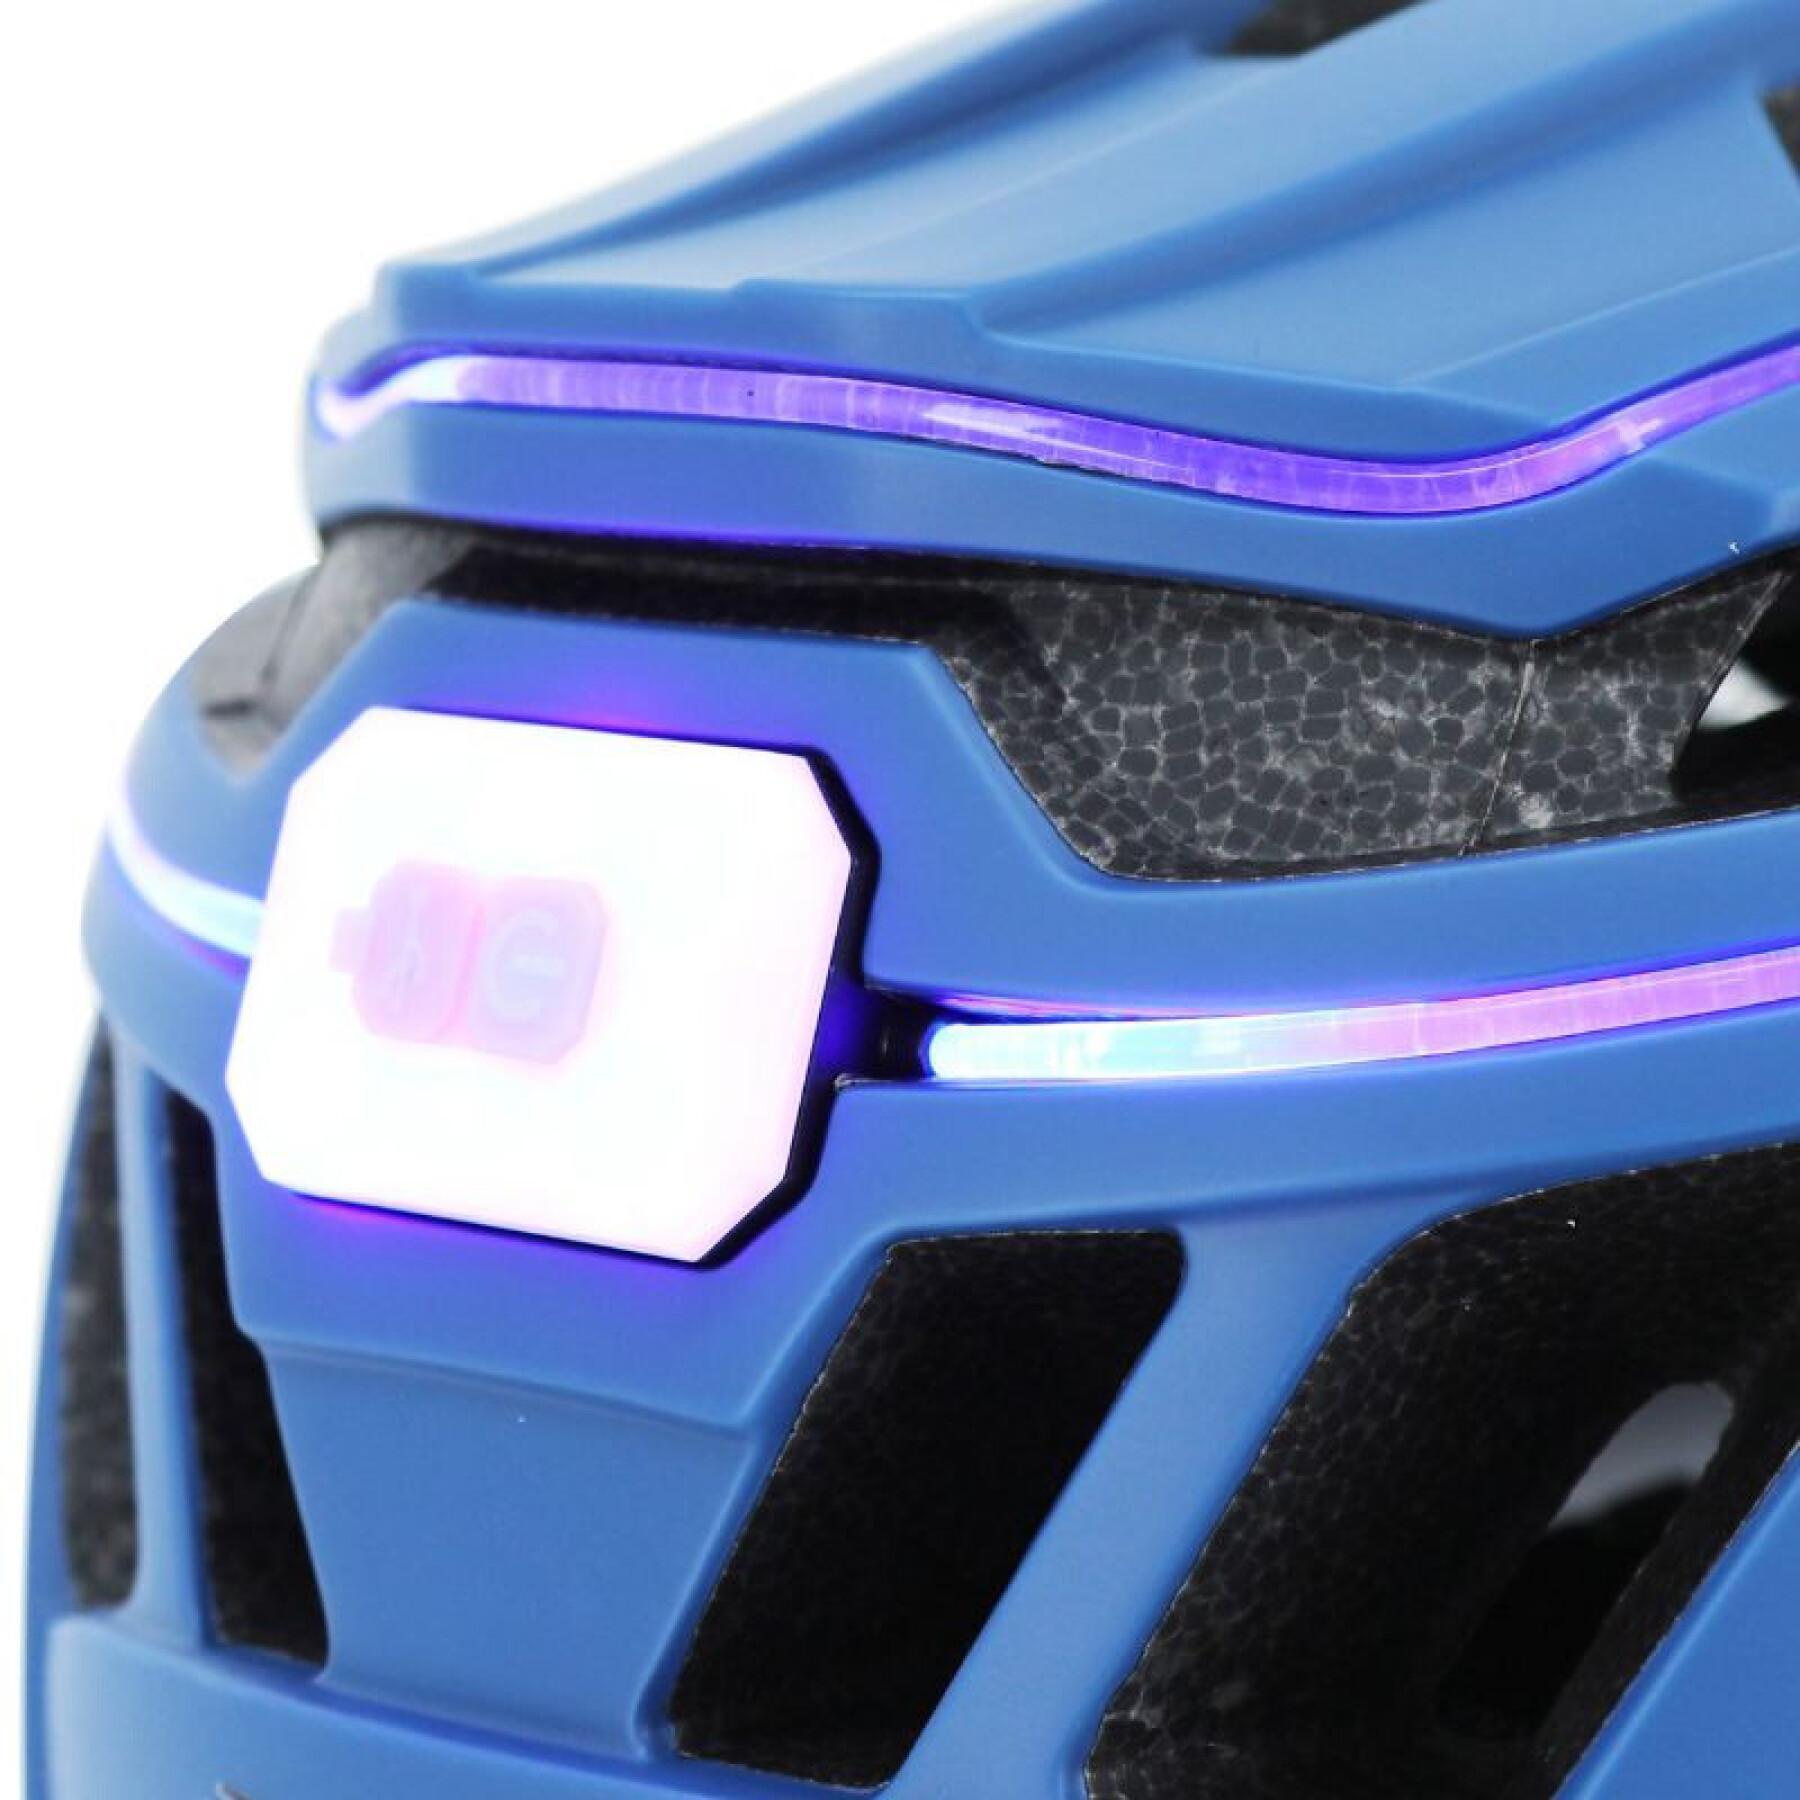 Fahrradhelm mit 360°-Beleuchtung mit Einstellungsrädchen Gist Luxo In-Mold